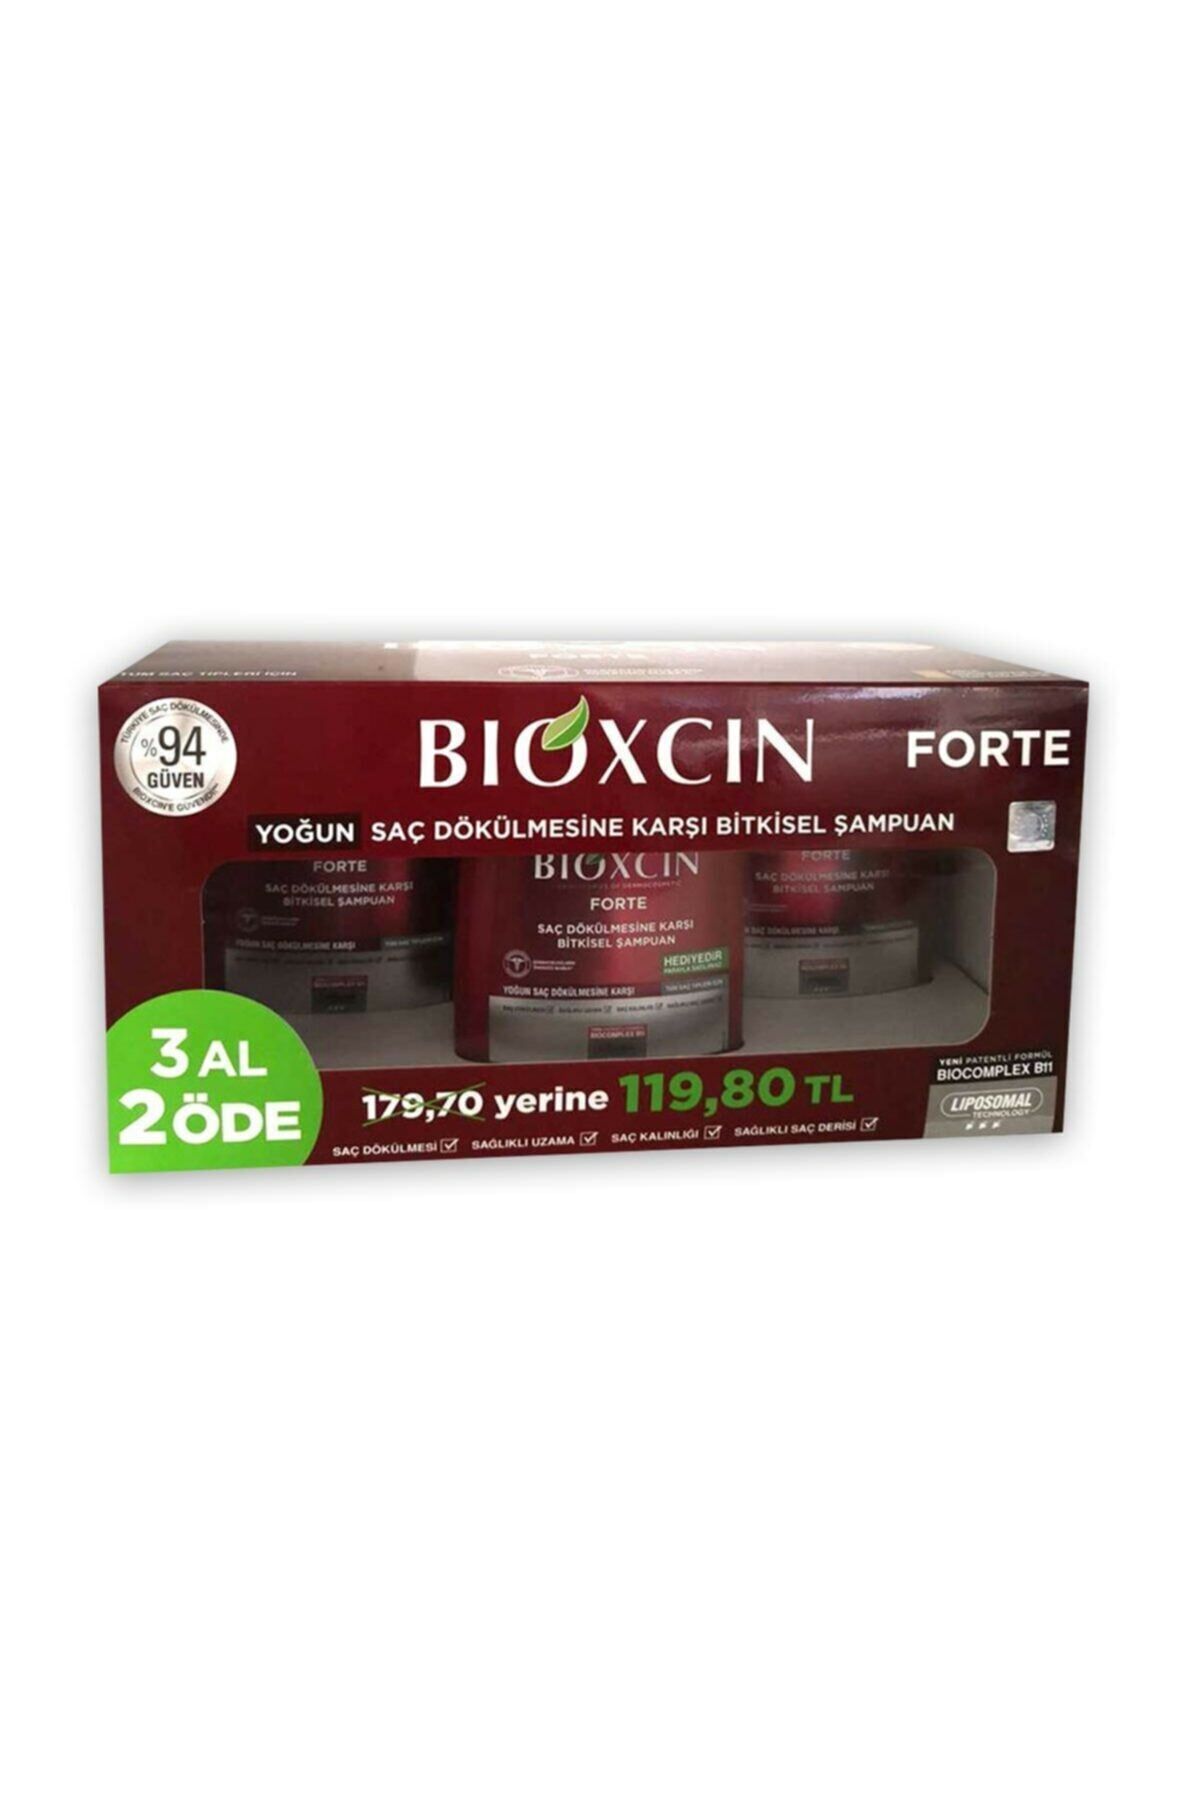 Bioxcin Forte Yoğun Saç Dökülmesine Karşı Bitkisel Şampuan 300 ml - 3 Al 2 Öde